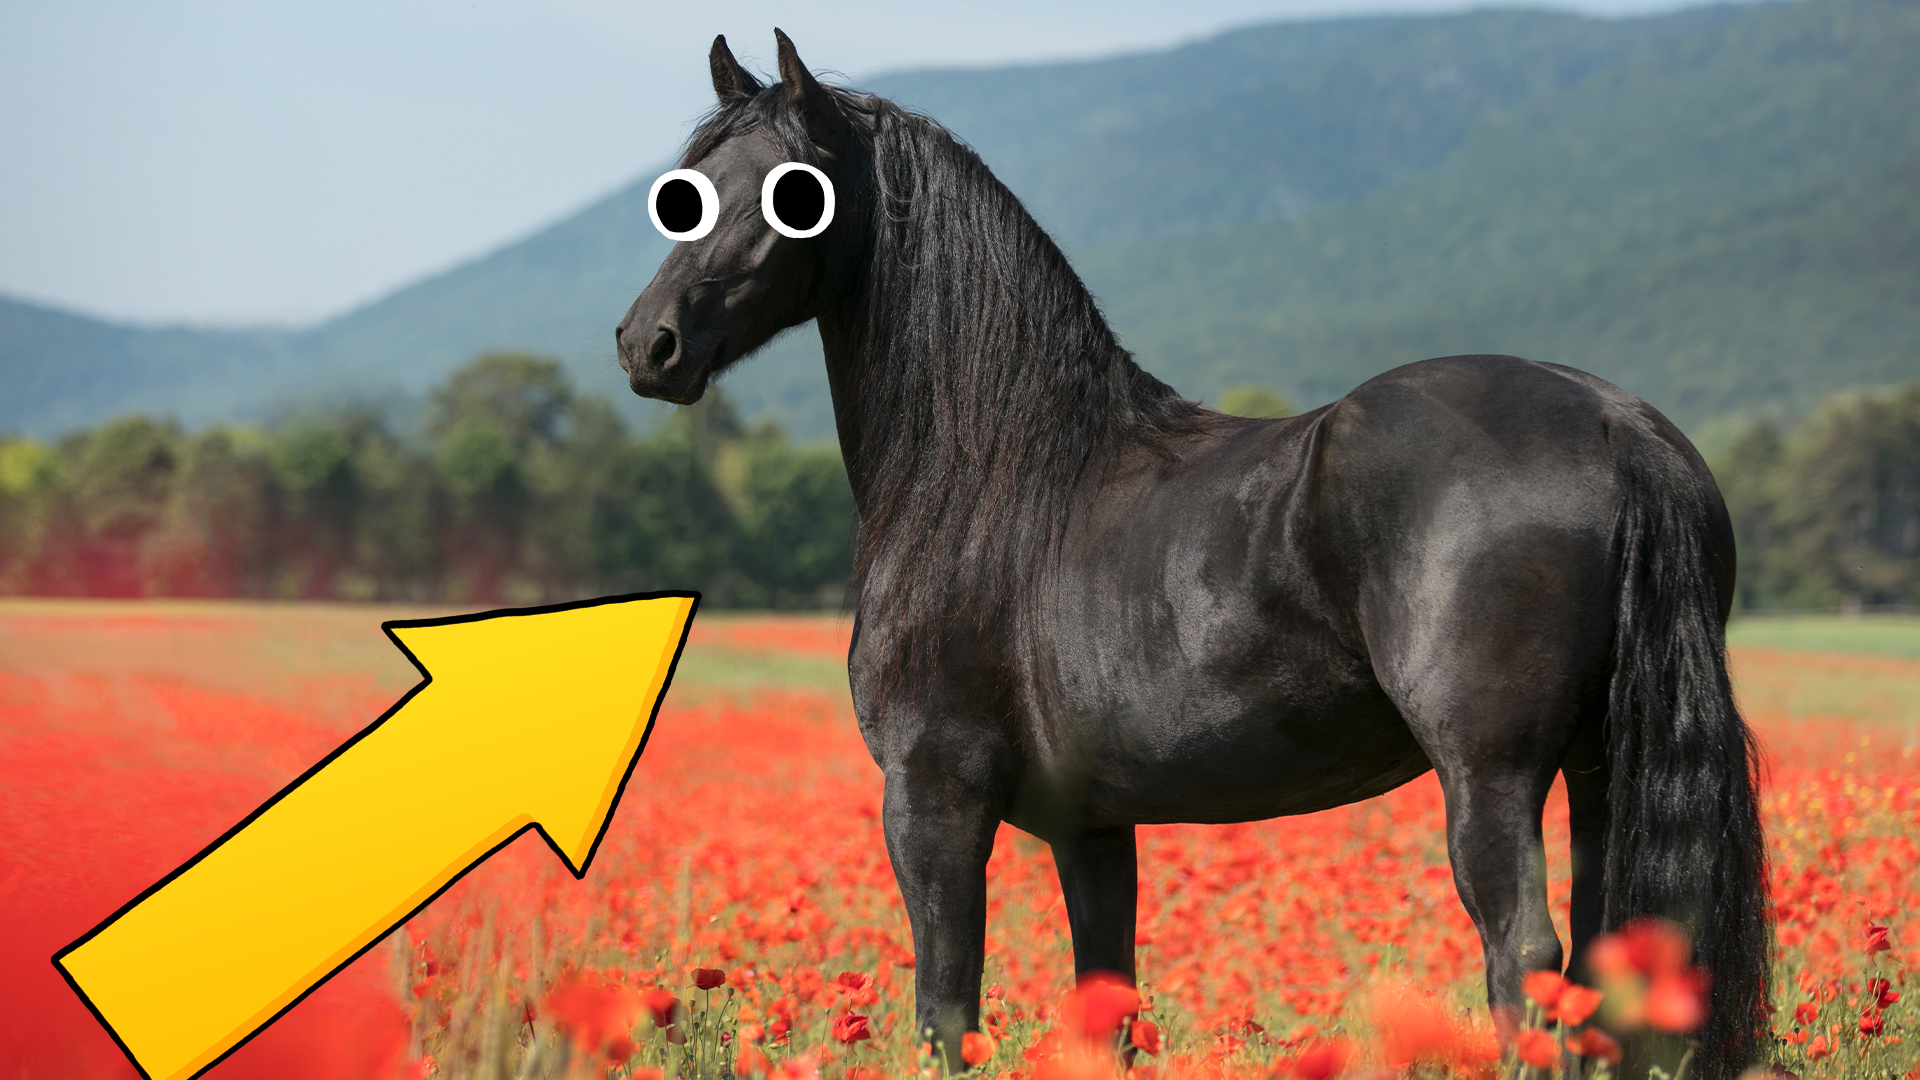 Horse in poppy field with arrow